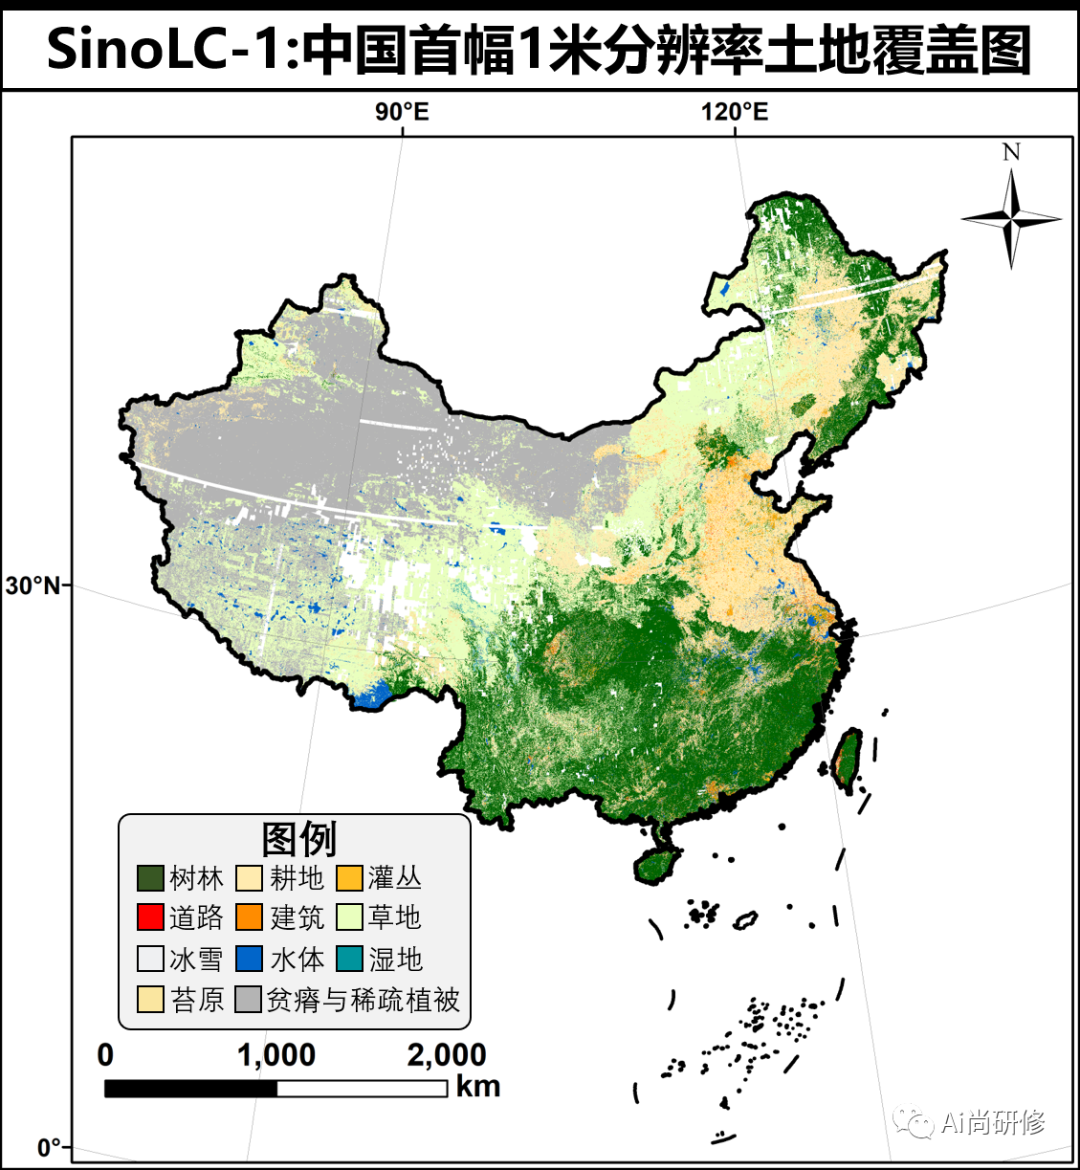 中国首幅1米分辨率土地覆盖图